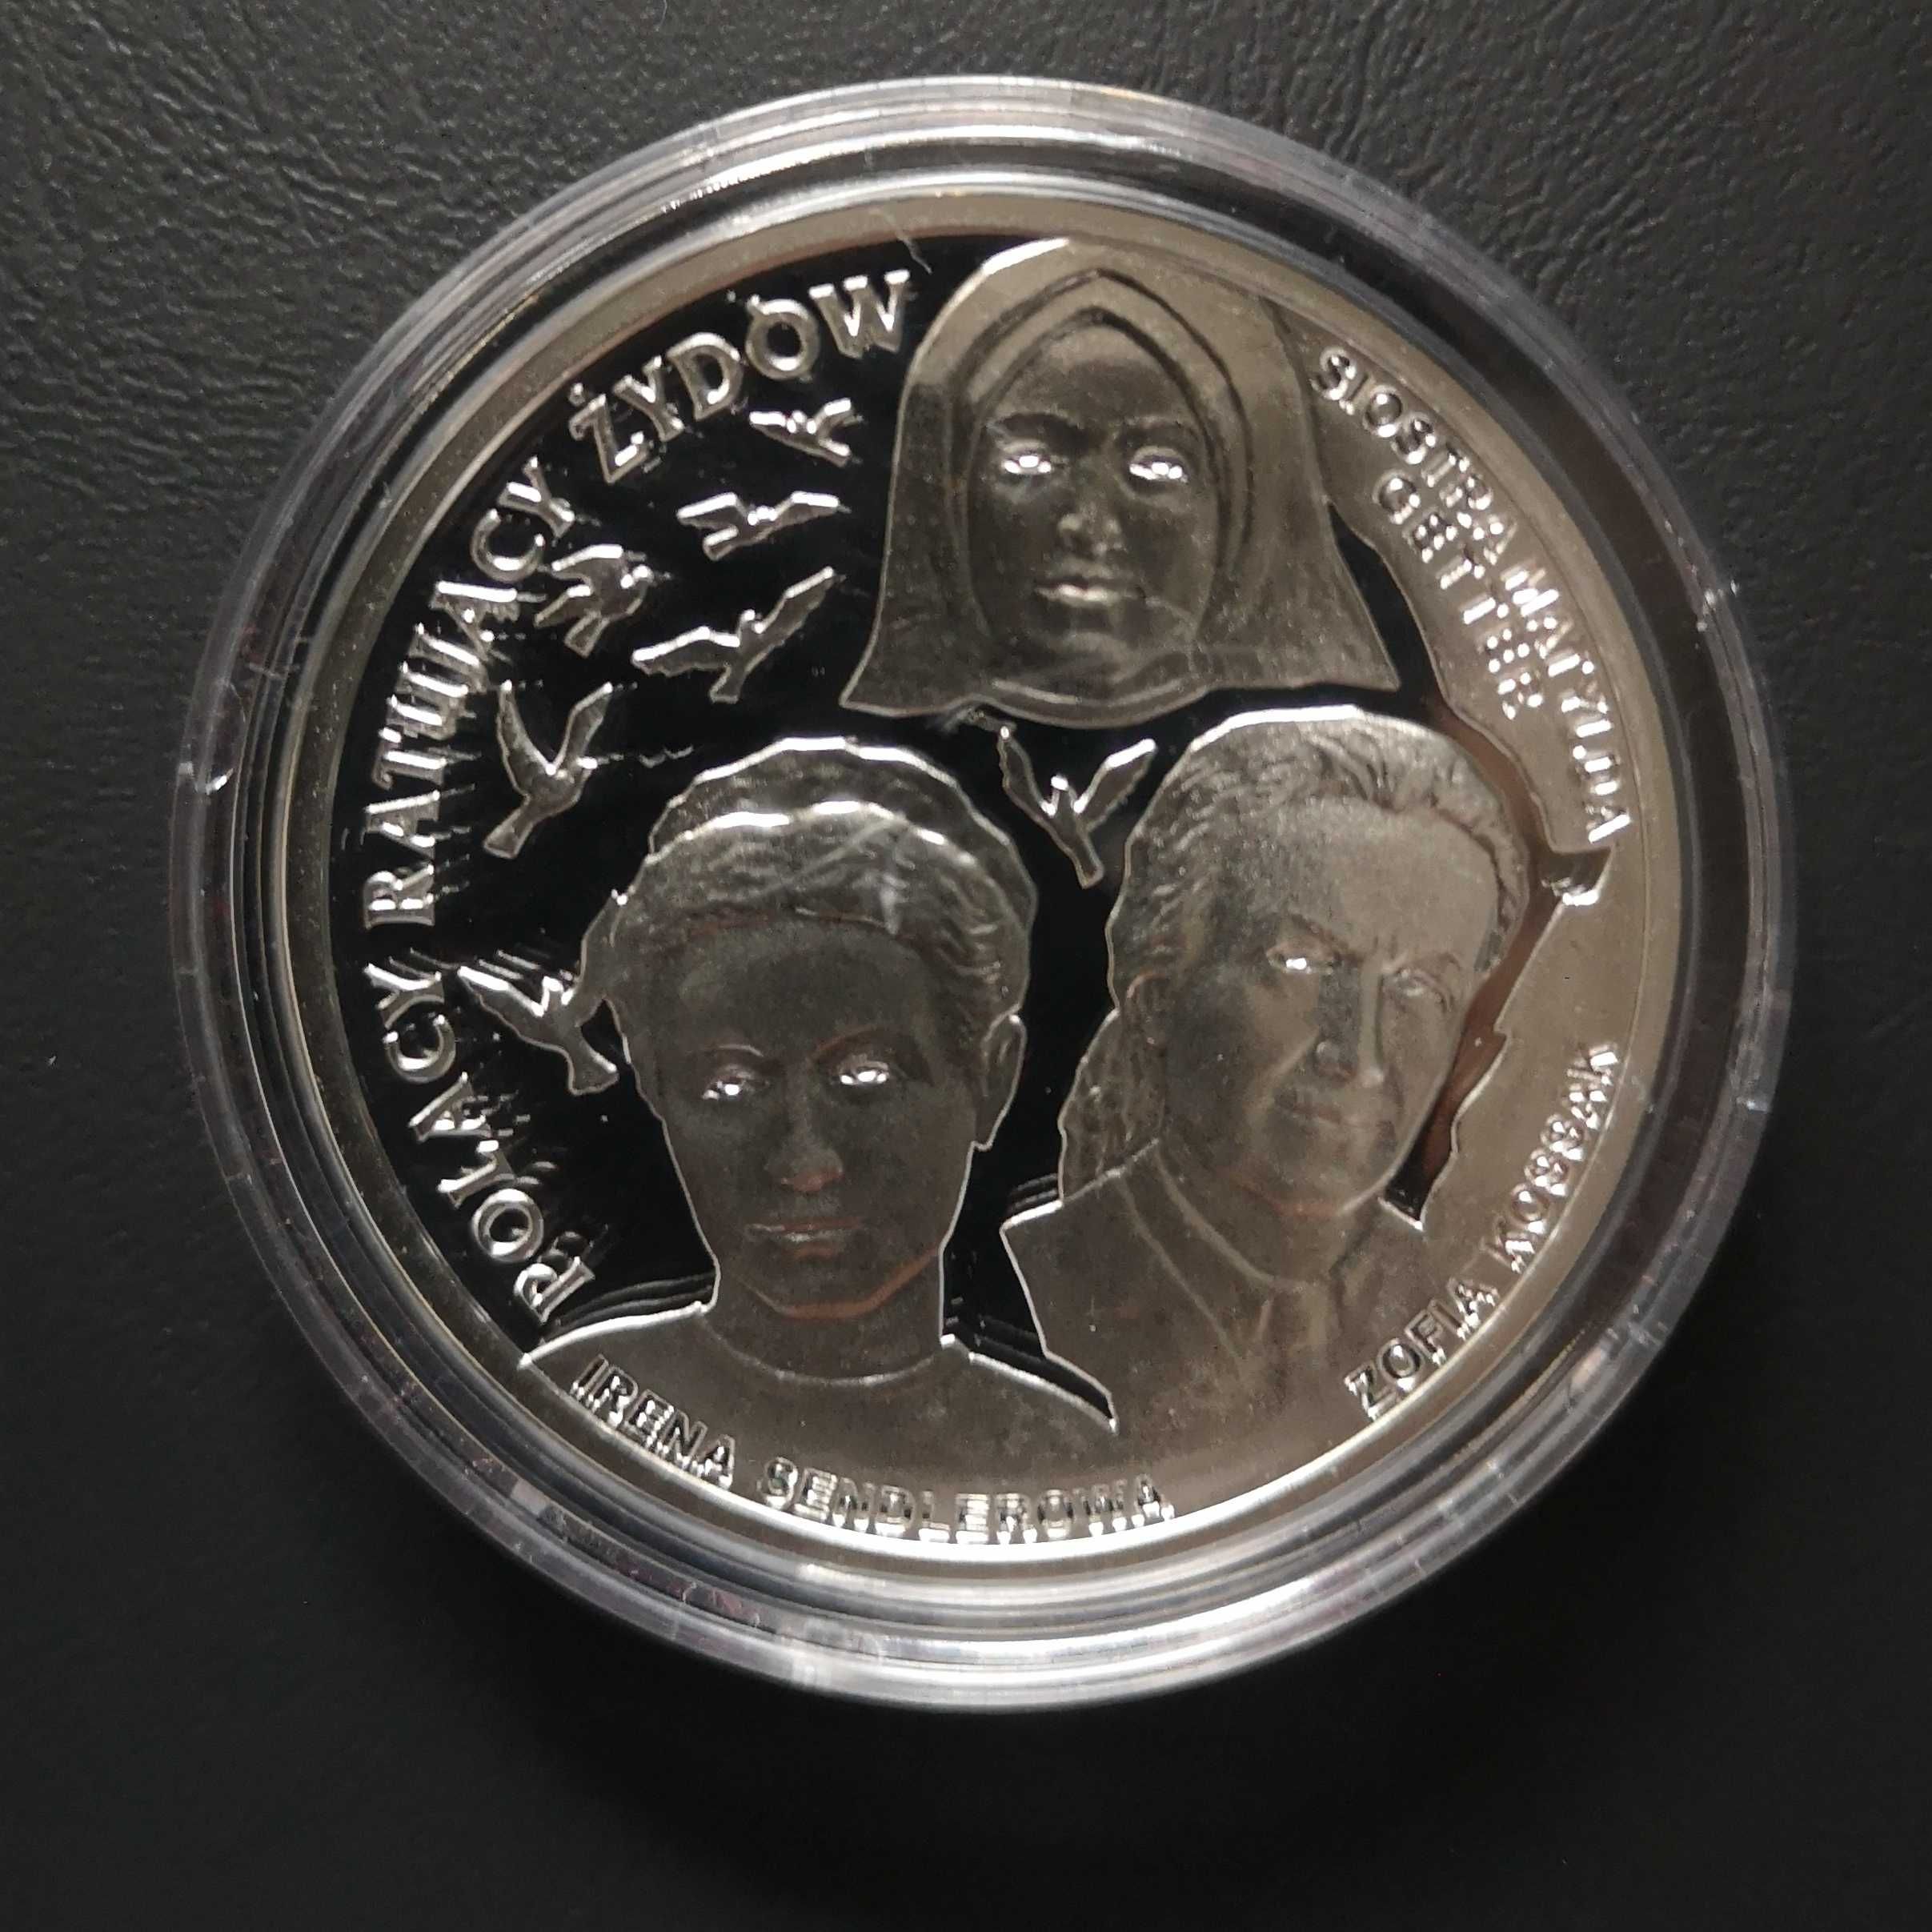 Moneta kolekcjonerska 20 zł 2009 r. Polacy ratujący Żydów